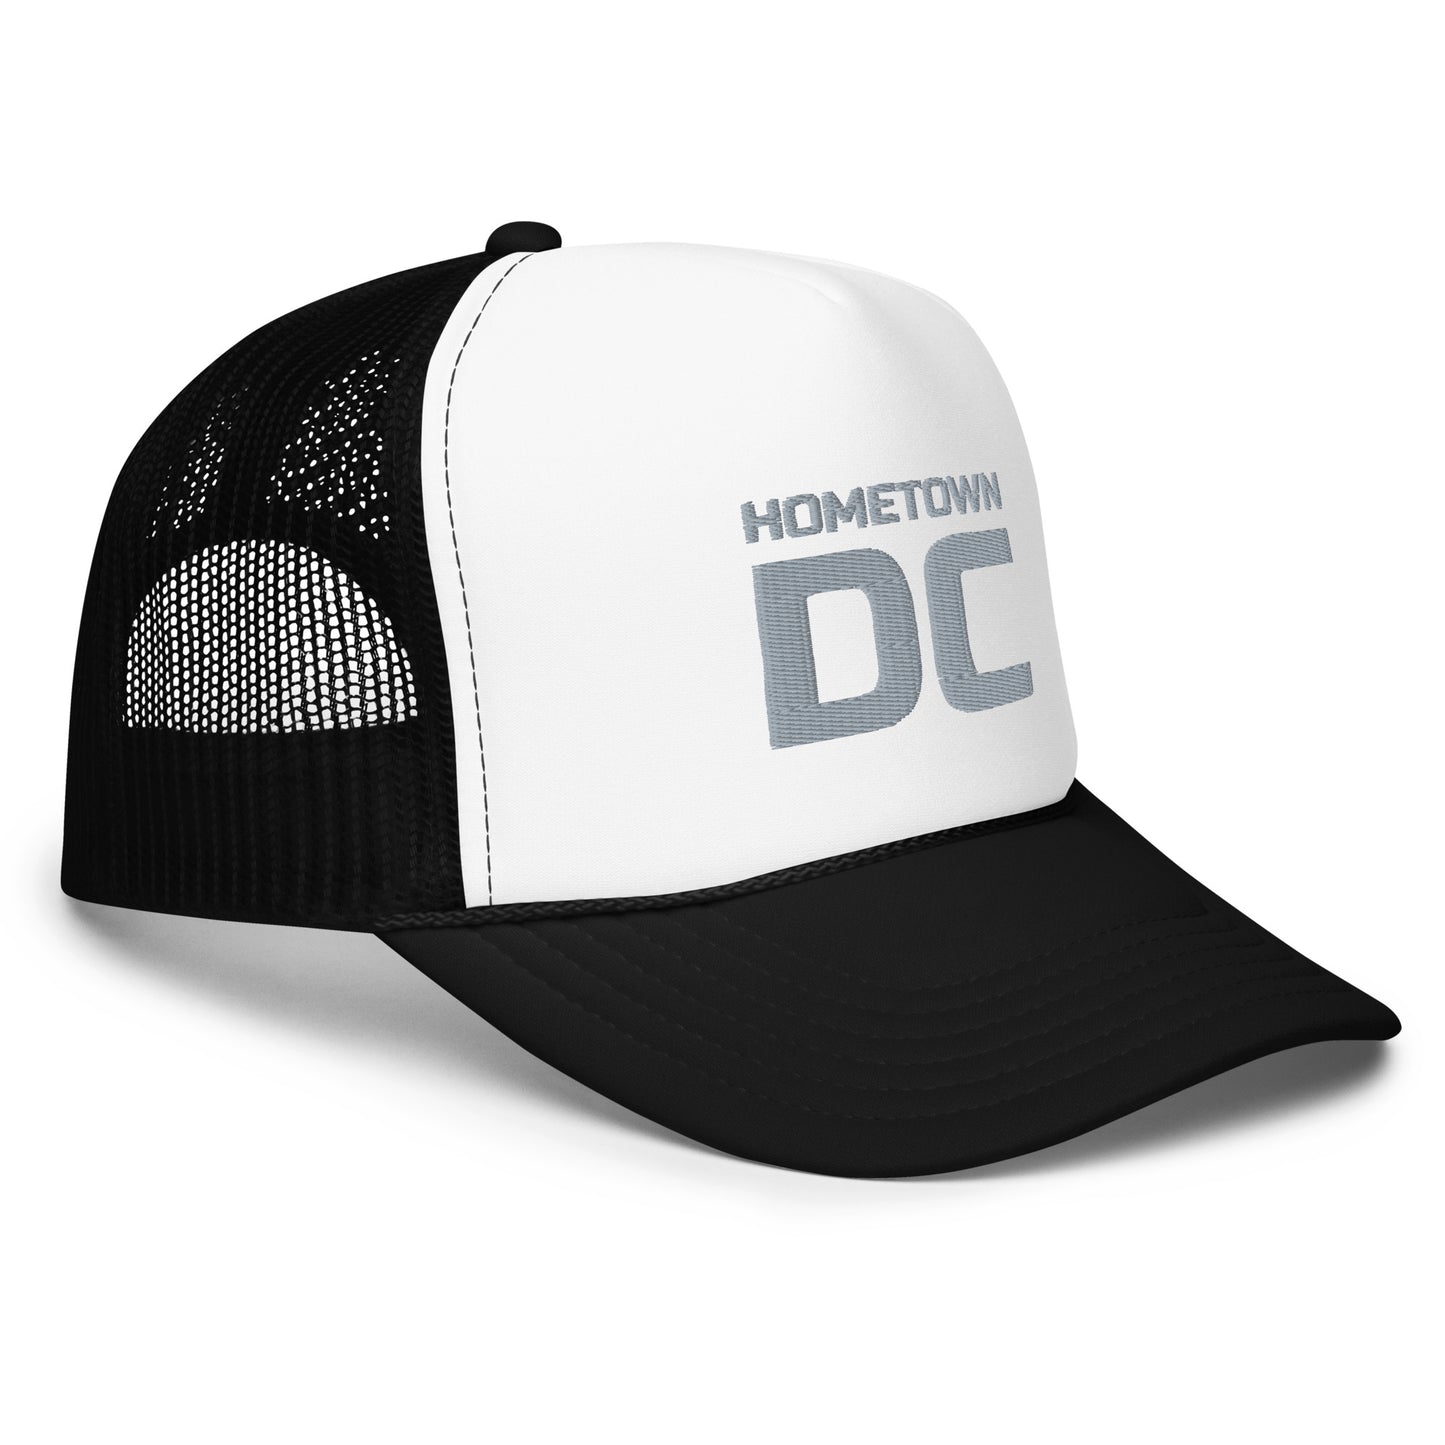 HTDC Foam trucker hat